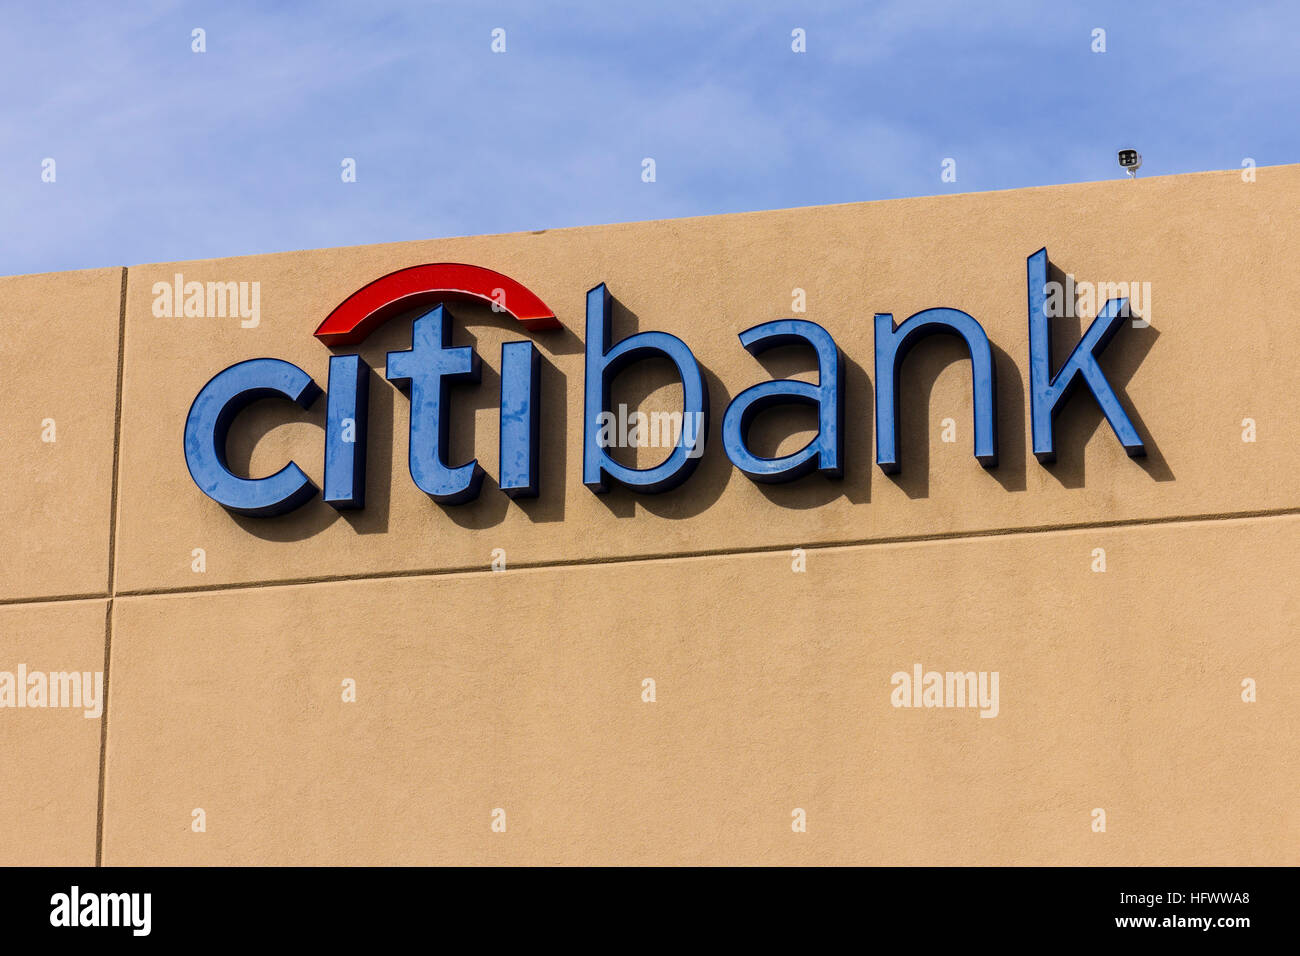 Las Vegas - ca. Dezember 2016: Citibank Verbraucher Zweig. Citibank ist der Verbraucher Aufteilung der finanziellen Dienstleistungen multinationalen Citigroup ich Stockfoto